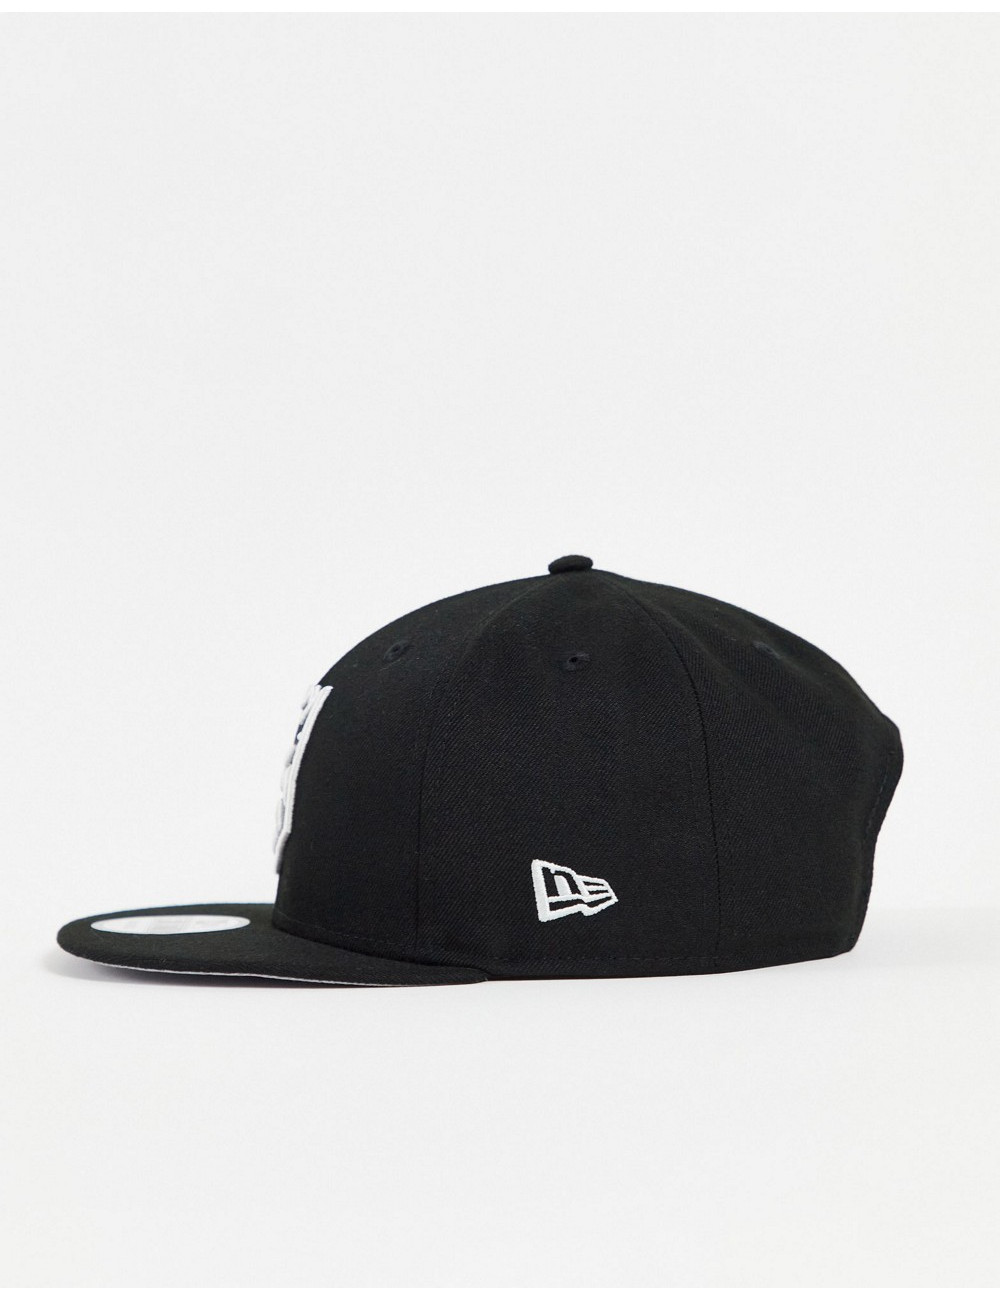 New Era 950 cap in black